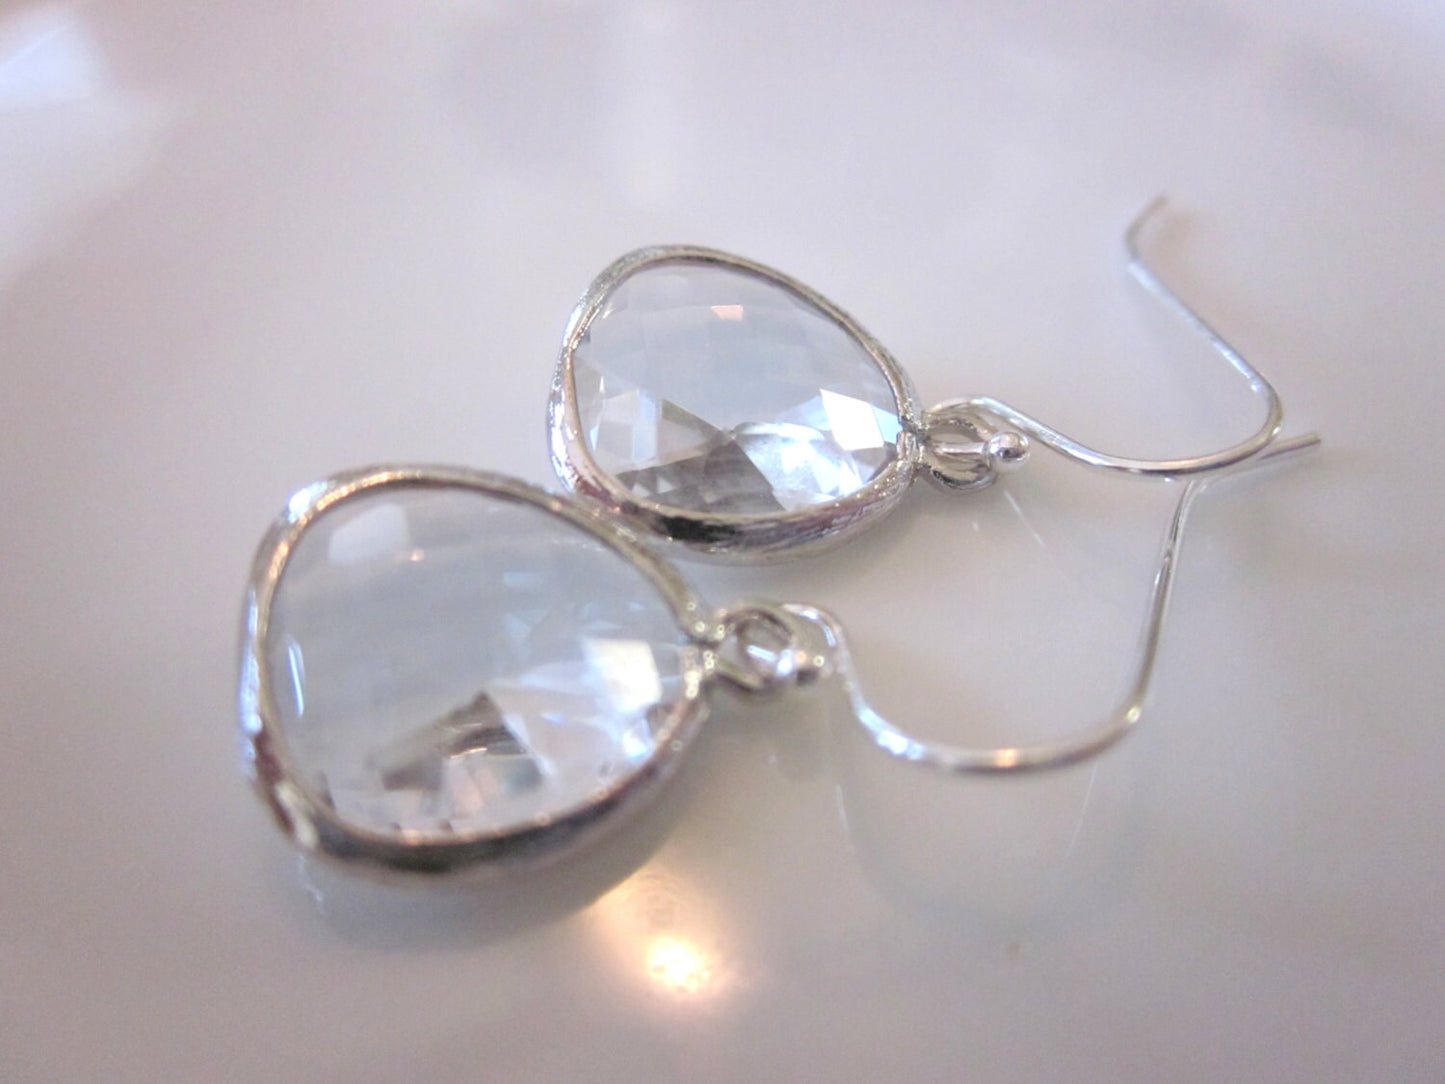 Silver Clear Crystal Earrings - Sterling Silver Earwires - Bridesmaid Earrings - Bridal Earrings - Wedding Earrings Jewelry